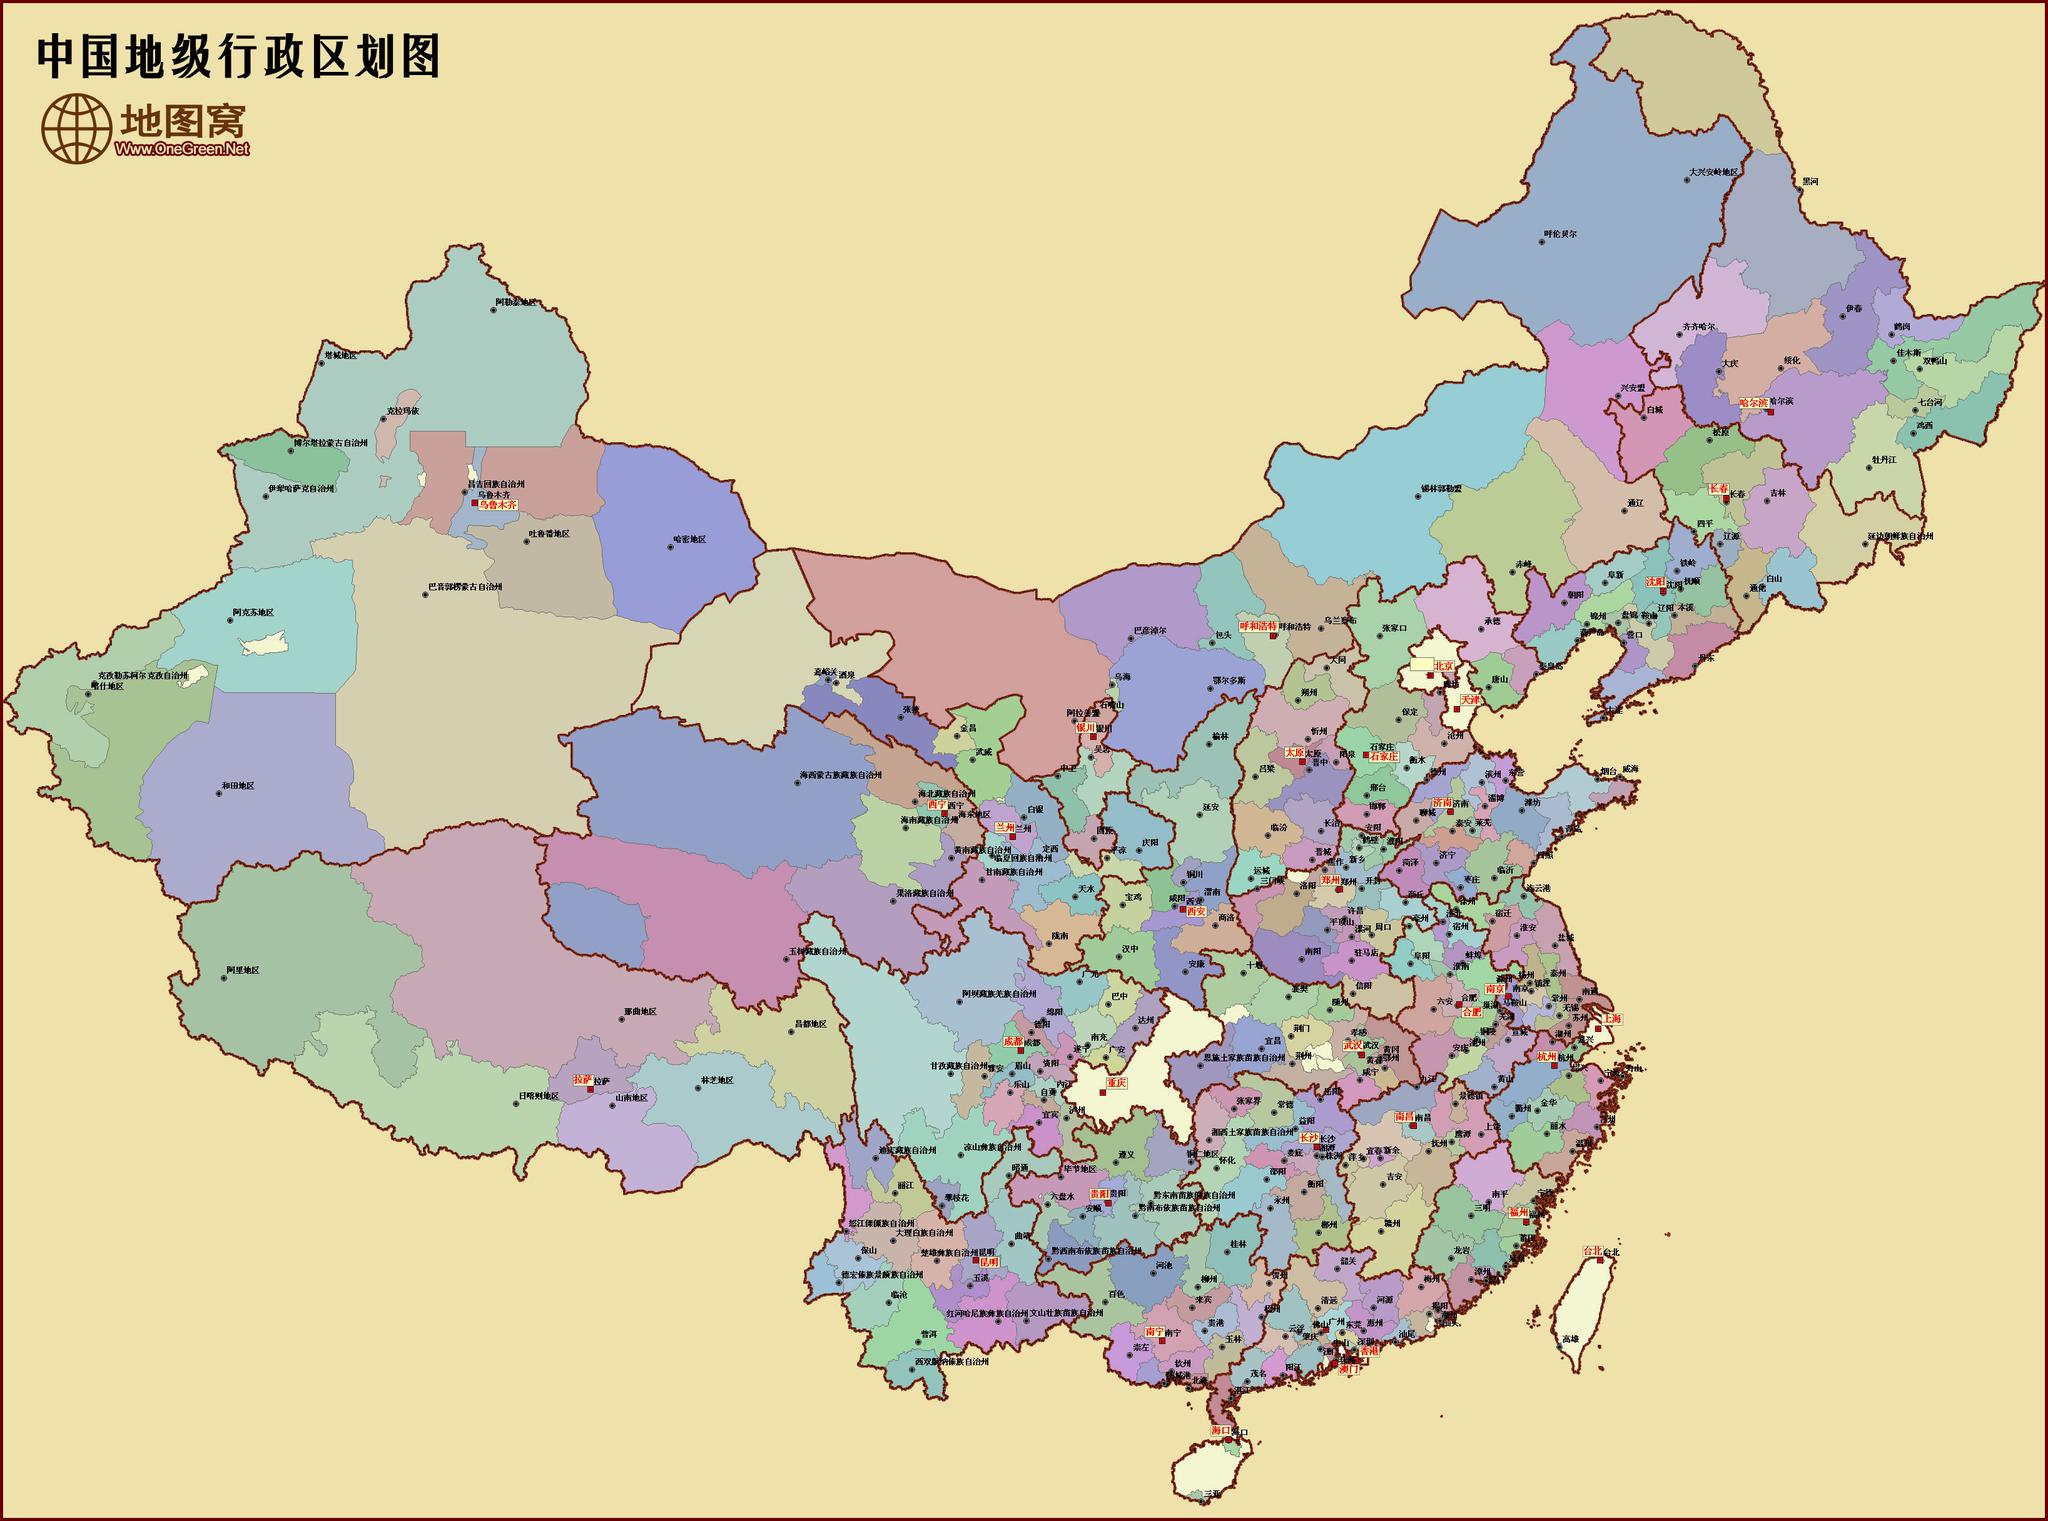 方舆 - 区划改革 - 中国县级政区分类全图（2021-03-21） - Powered by phpwind